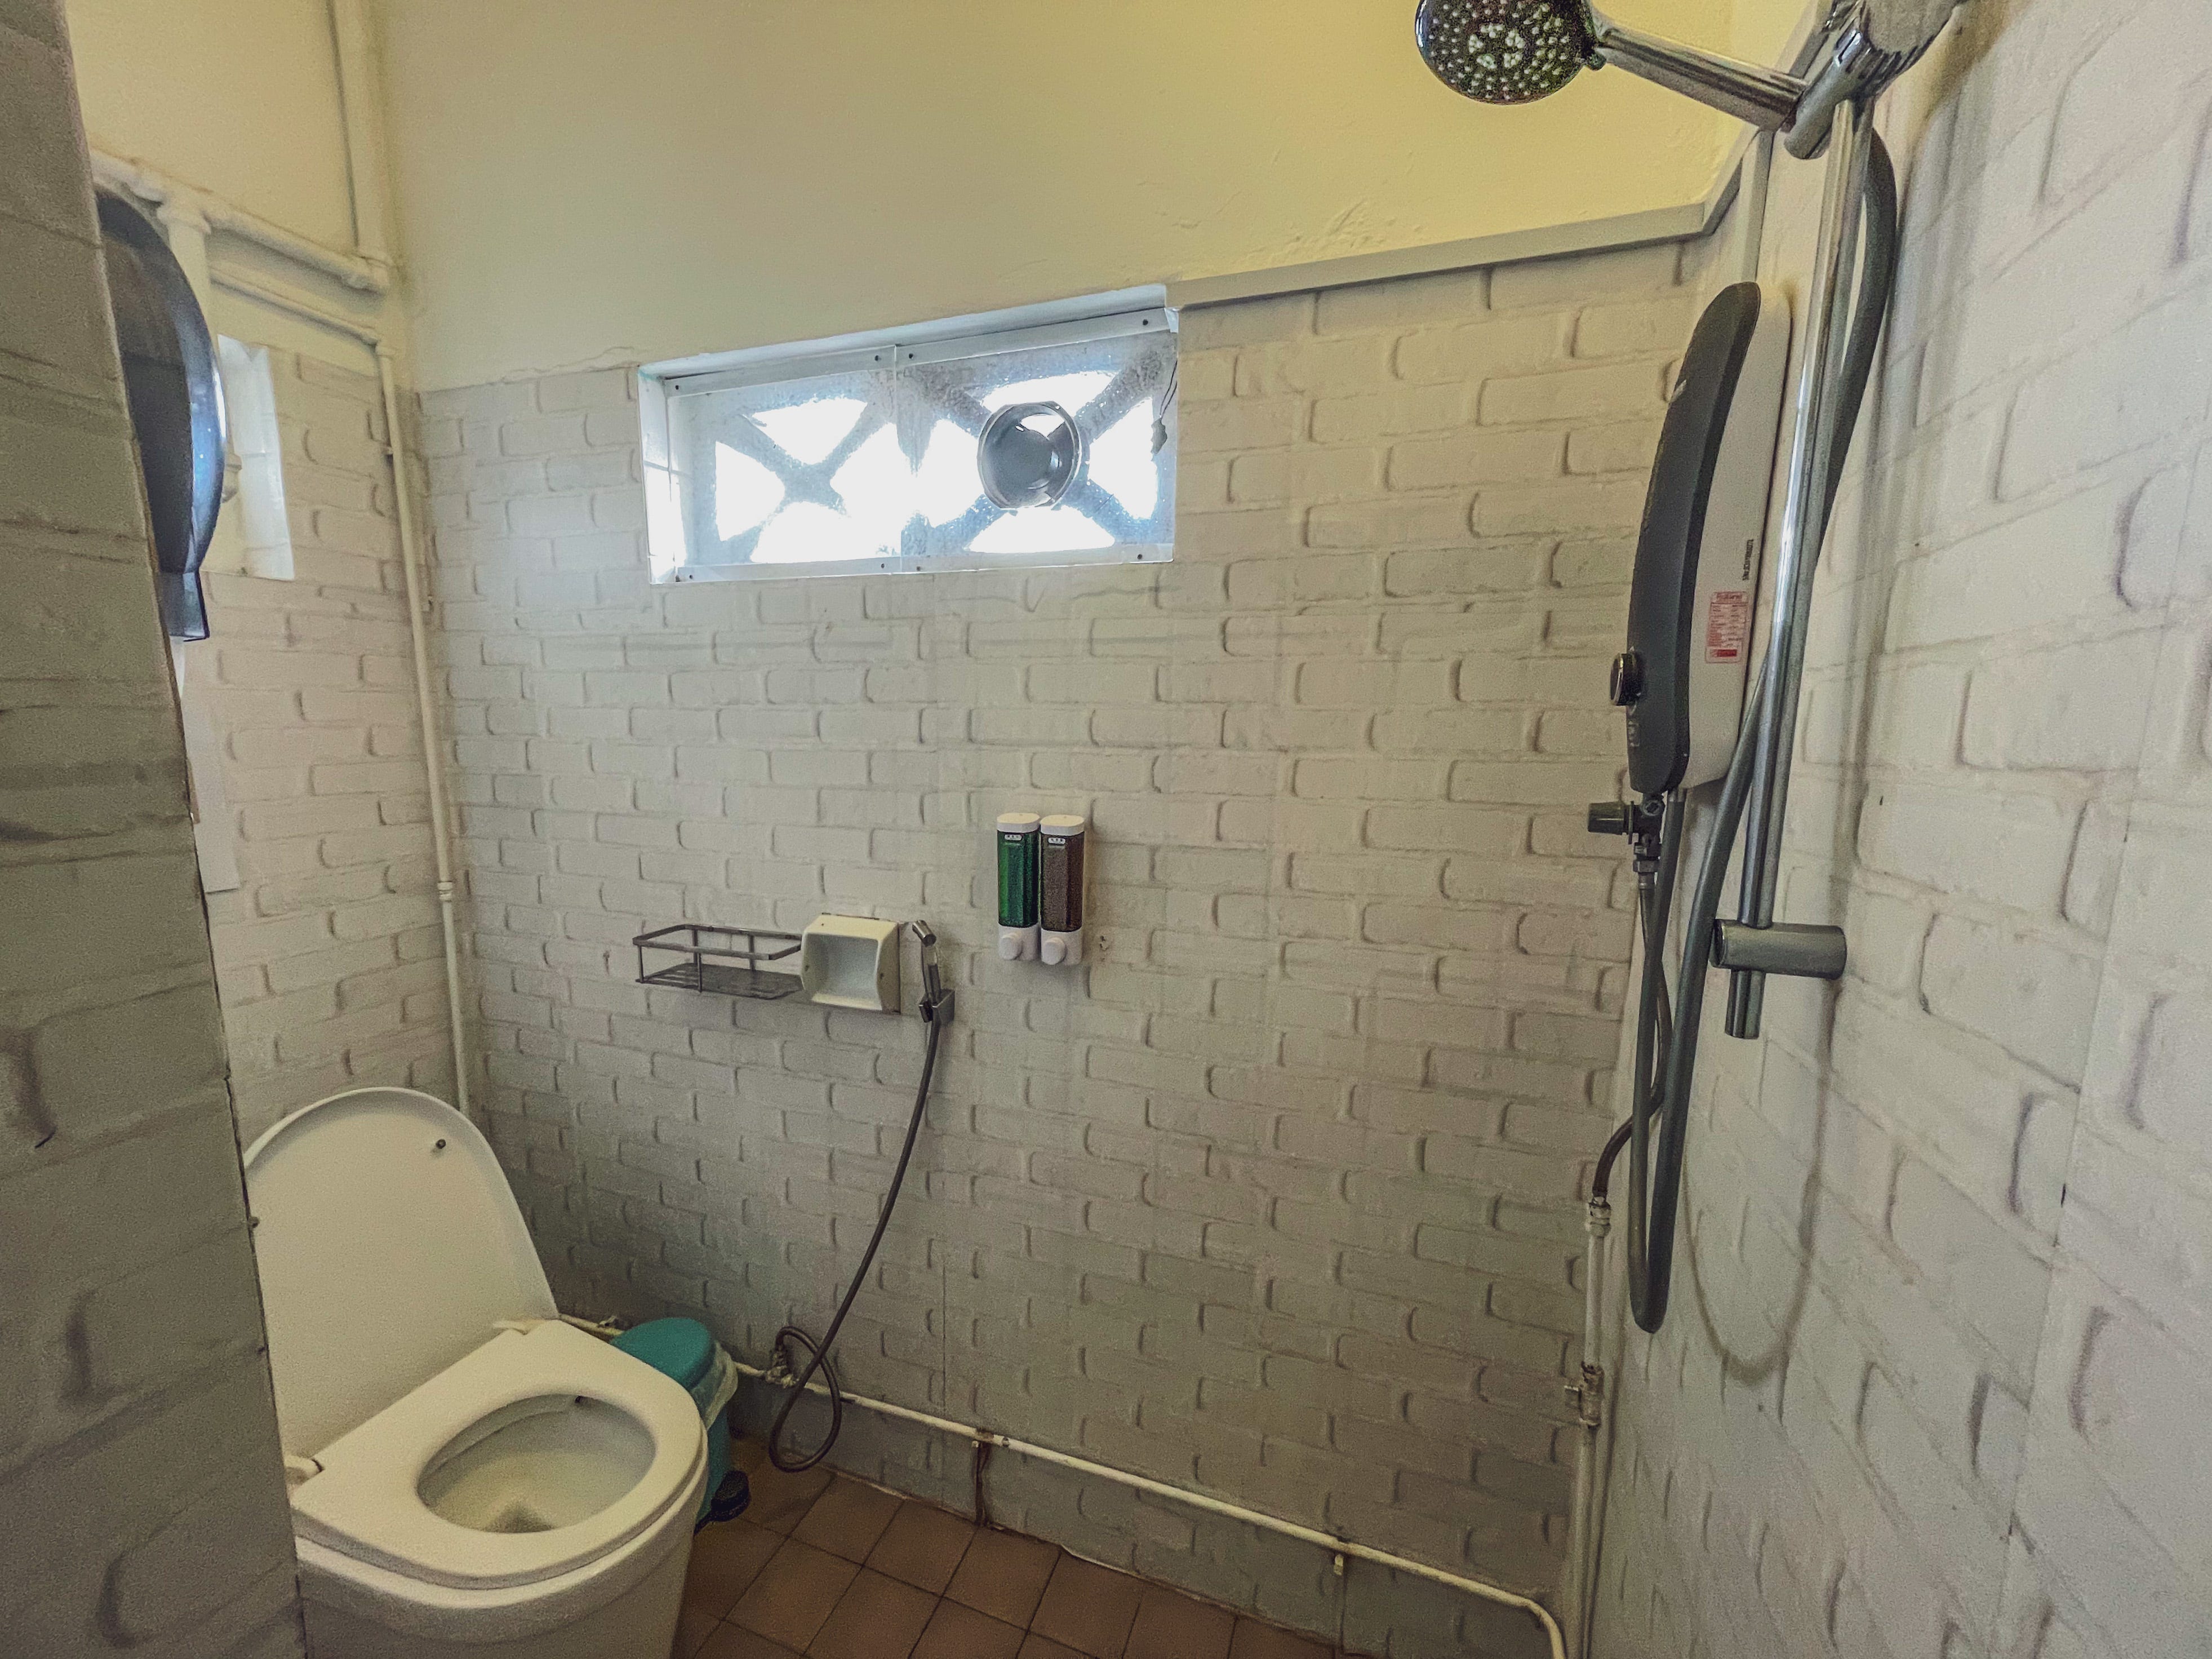 Toilette/Dusche in den Galaxy Pods in Chinatown.